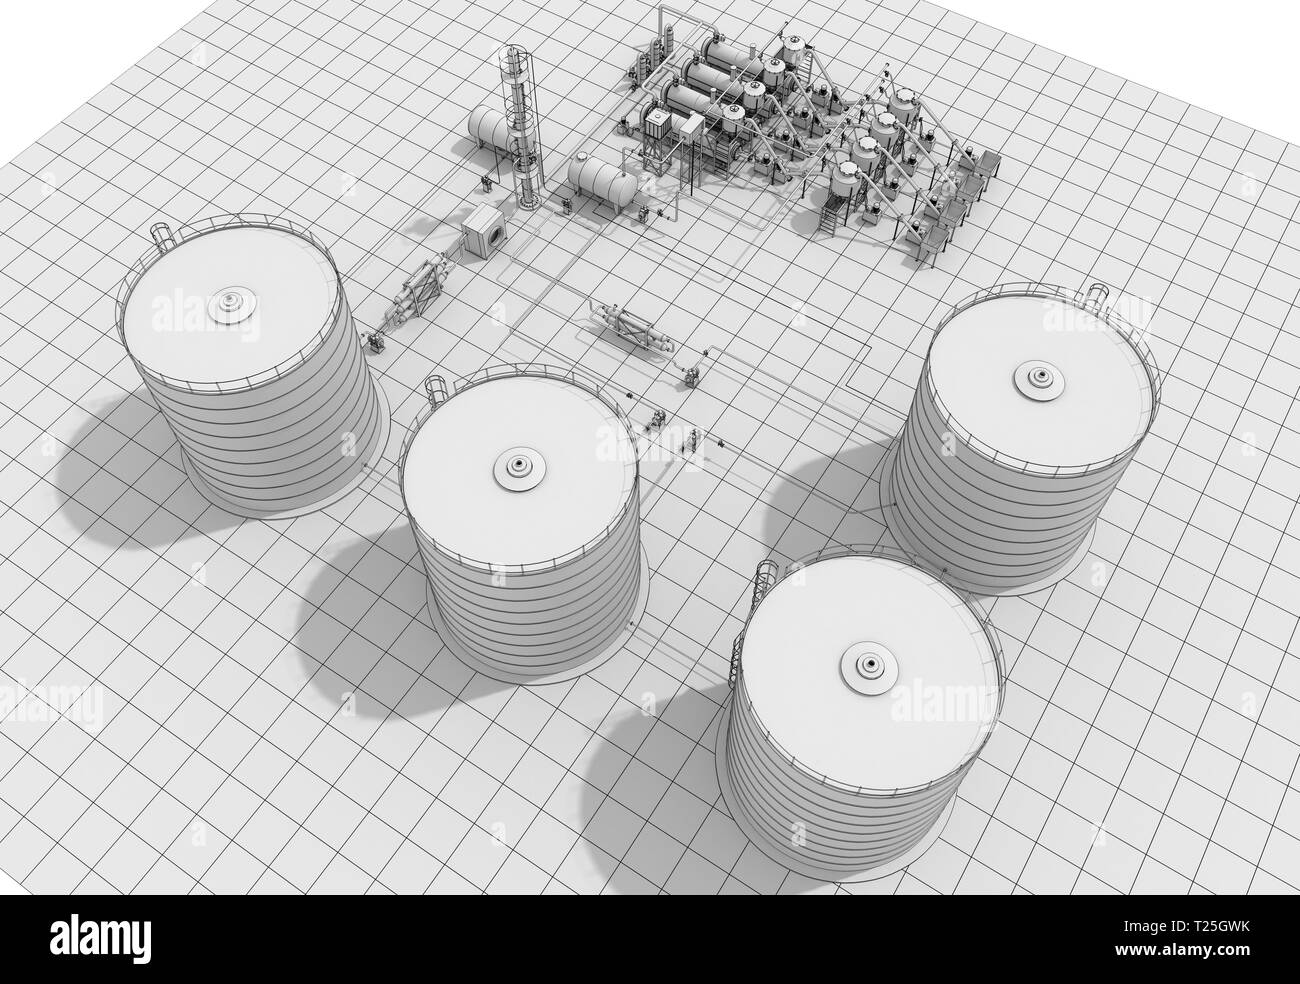 Raffinerie de pétrole, la production de produits chimiques, de l'usine de traitement des déchets, la visualisation extérieure, 3D illustration Banque D'Images